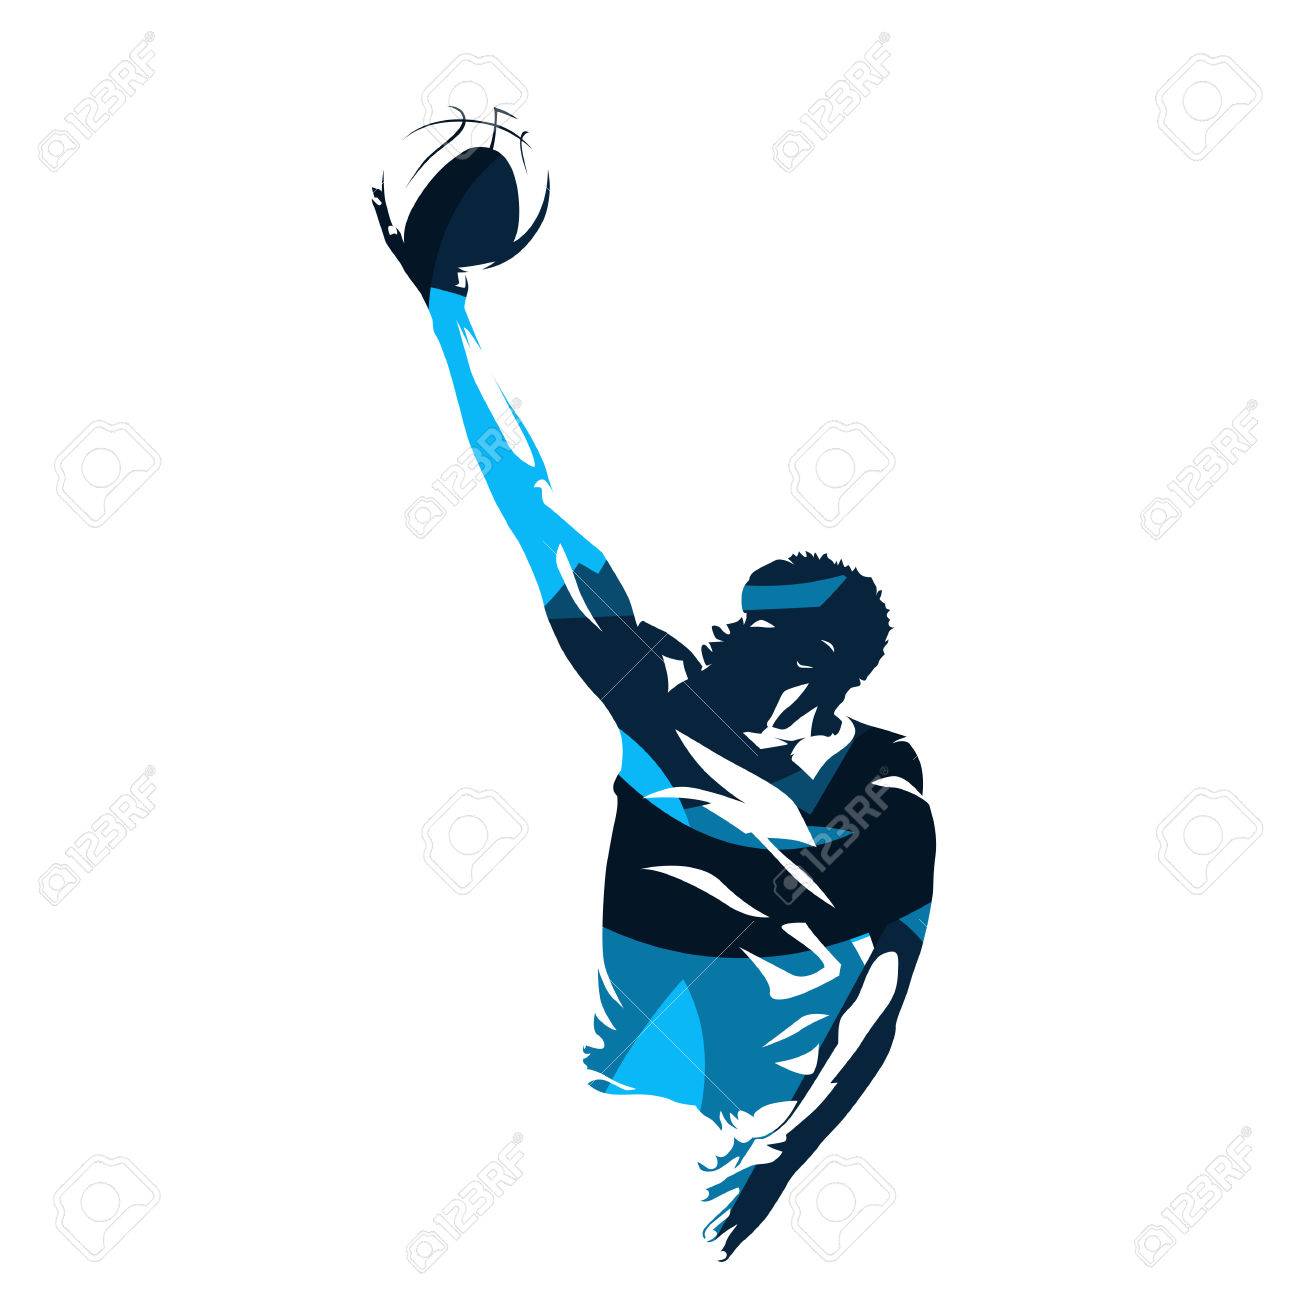 Basketball Player Making Lay Up Shot Abstract Blue Vector